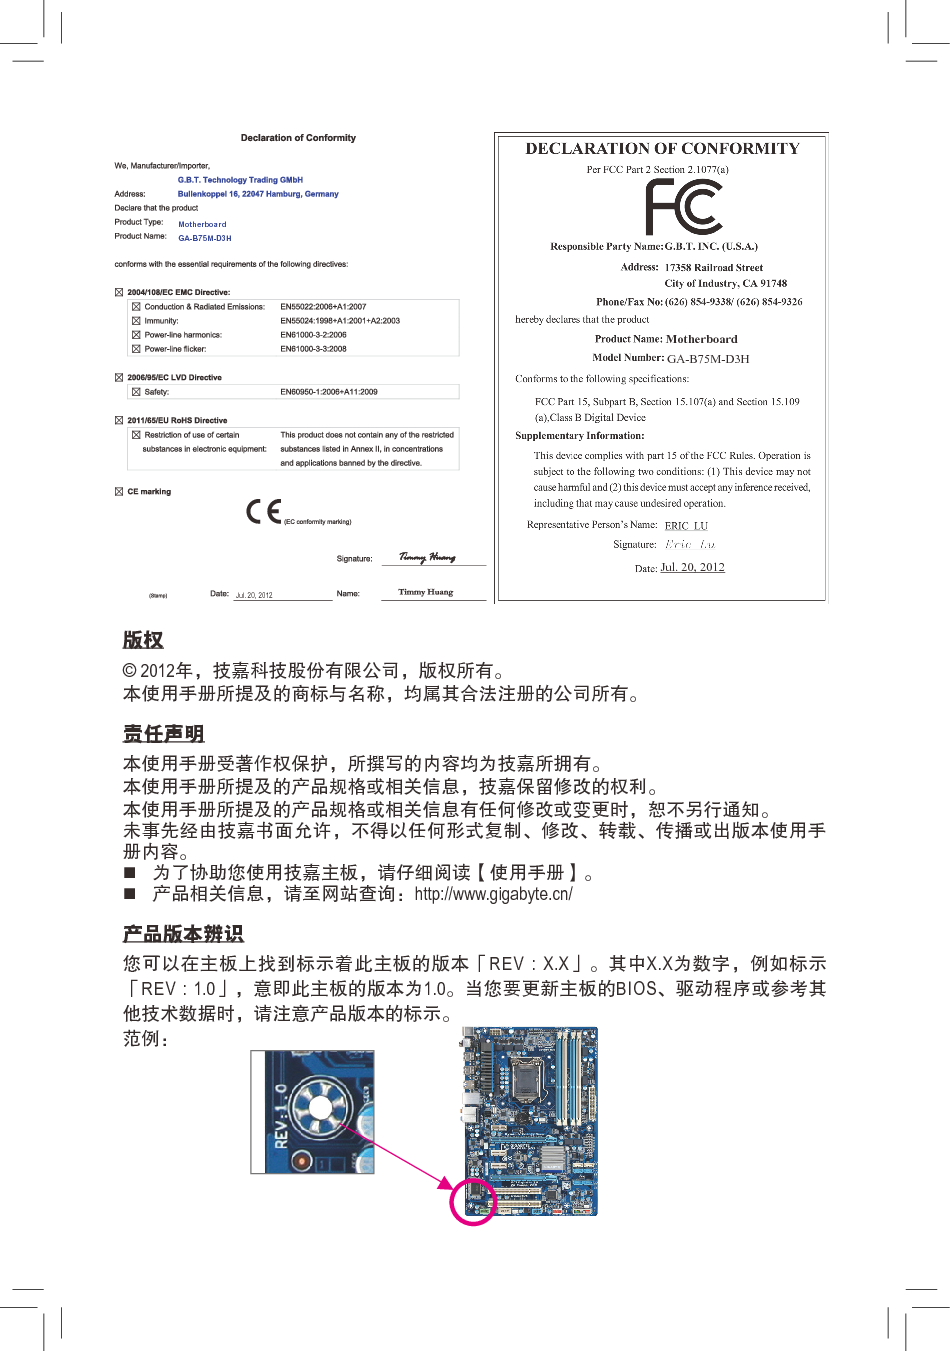 技嘉 Gigabyte GA-B75M-D3H 1102版 使用手册 第1页